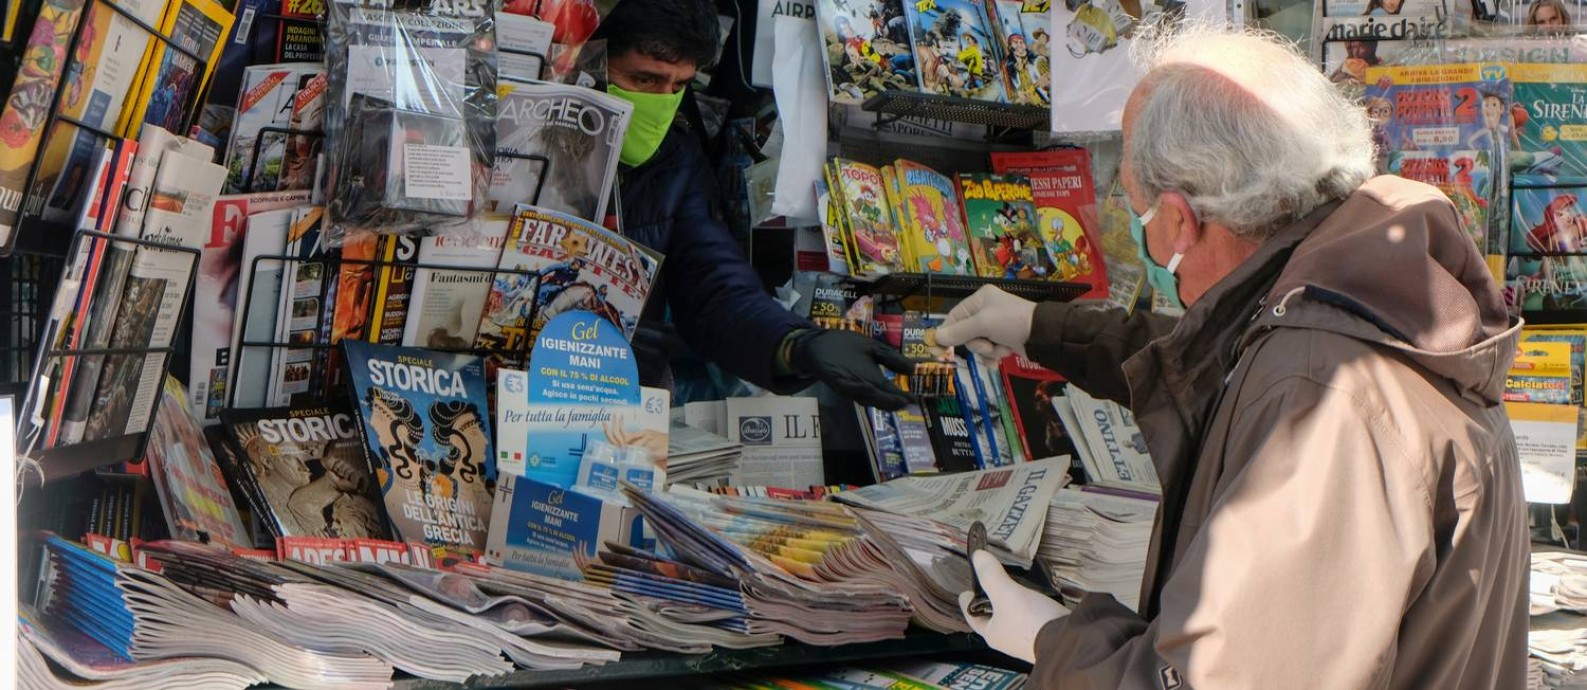 Homem de máscara faz compras em uma banca de jornal em Veneza, na Itália, durante pandemia da Covid-19 Foto: MANUEL SILVESTRI / REUTERS